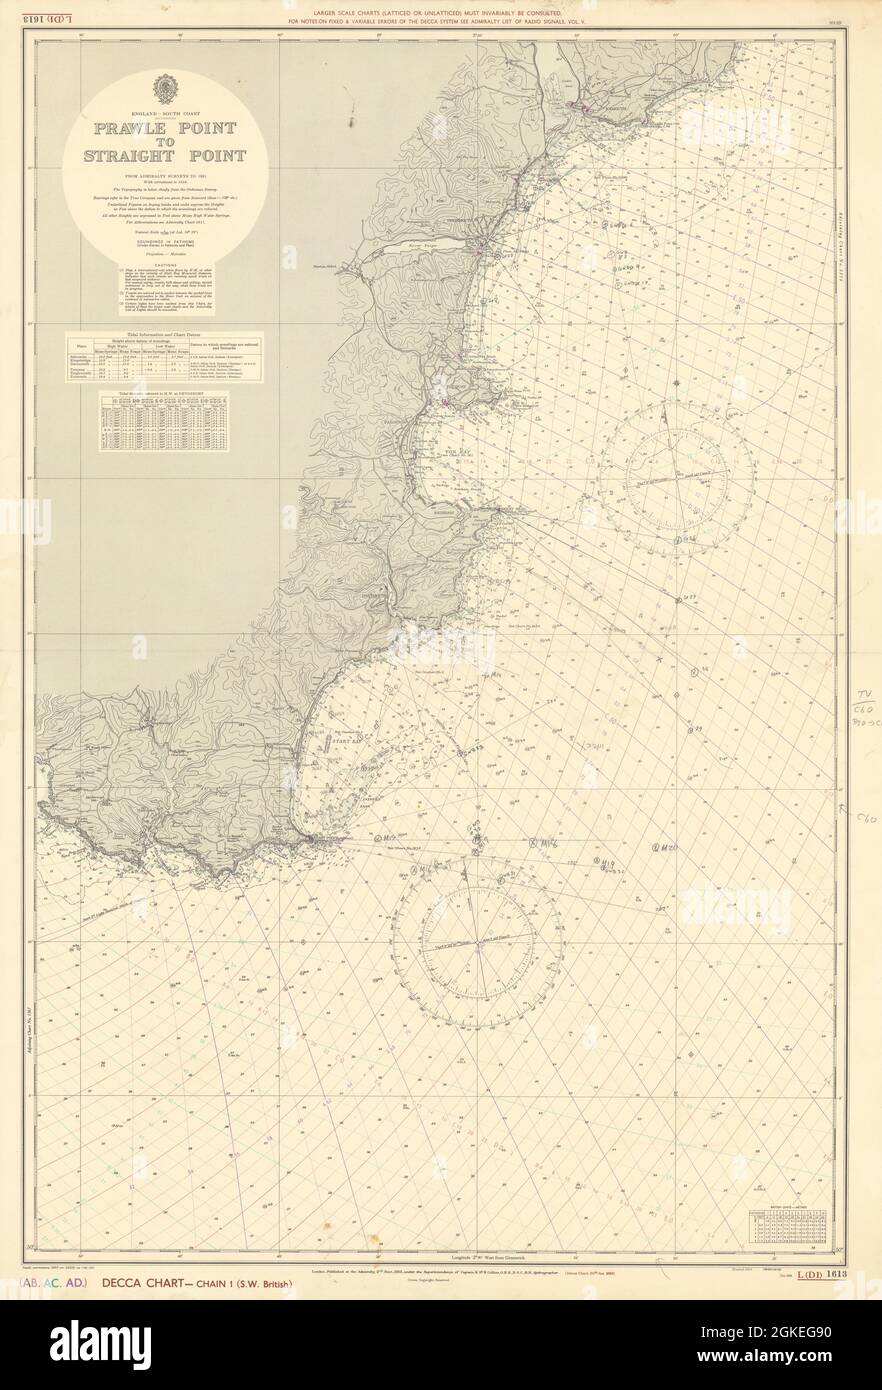 Südküste von Devon. Prawle Point-Straight Point ADMIRALTY Seekarte 1955 (1962) Karte Stockfoto